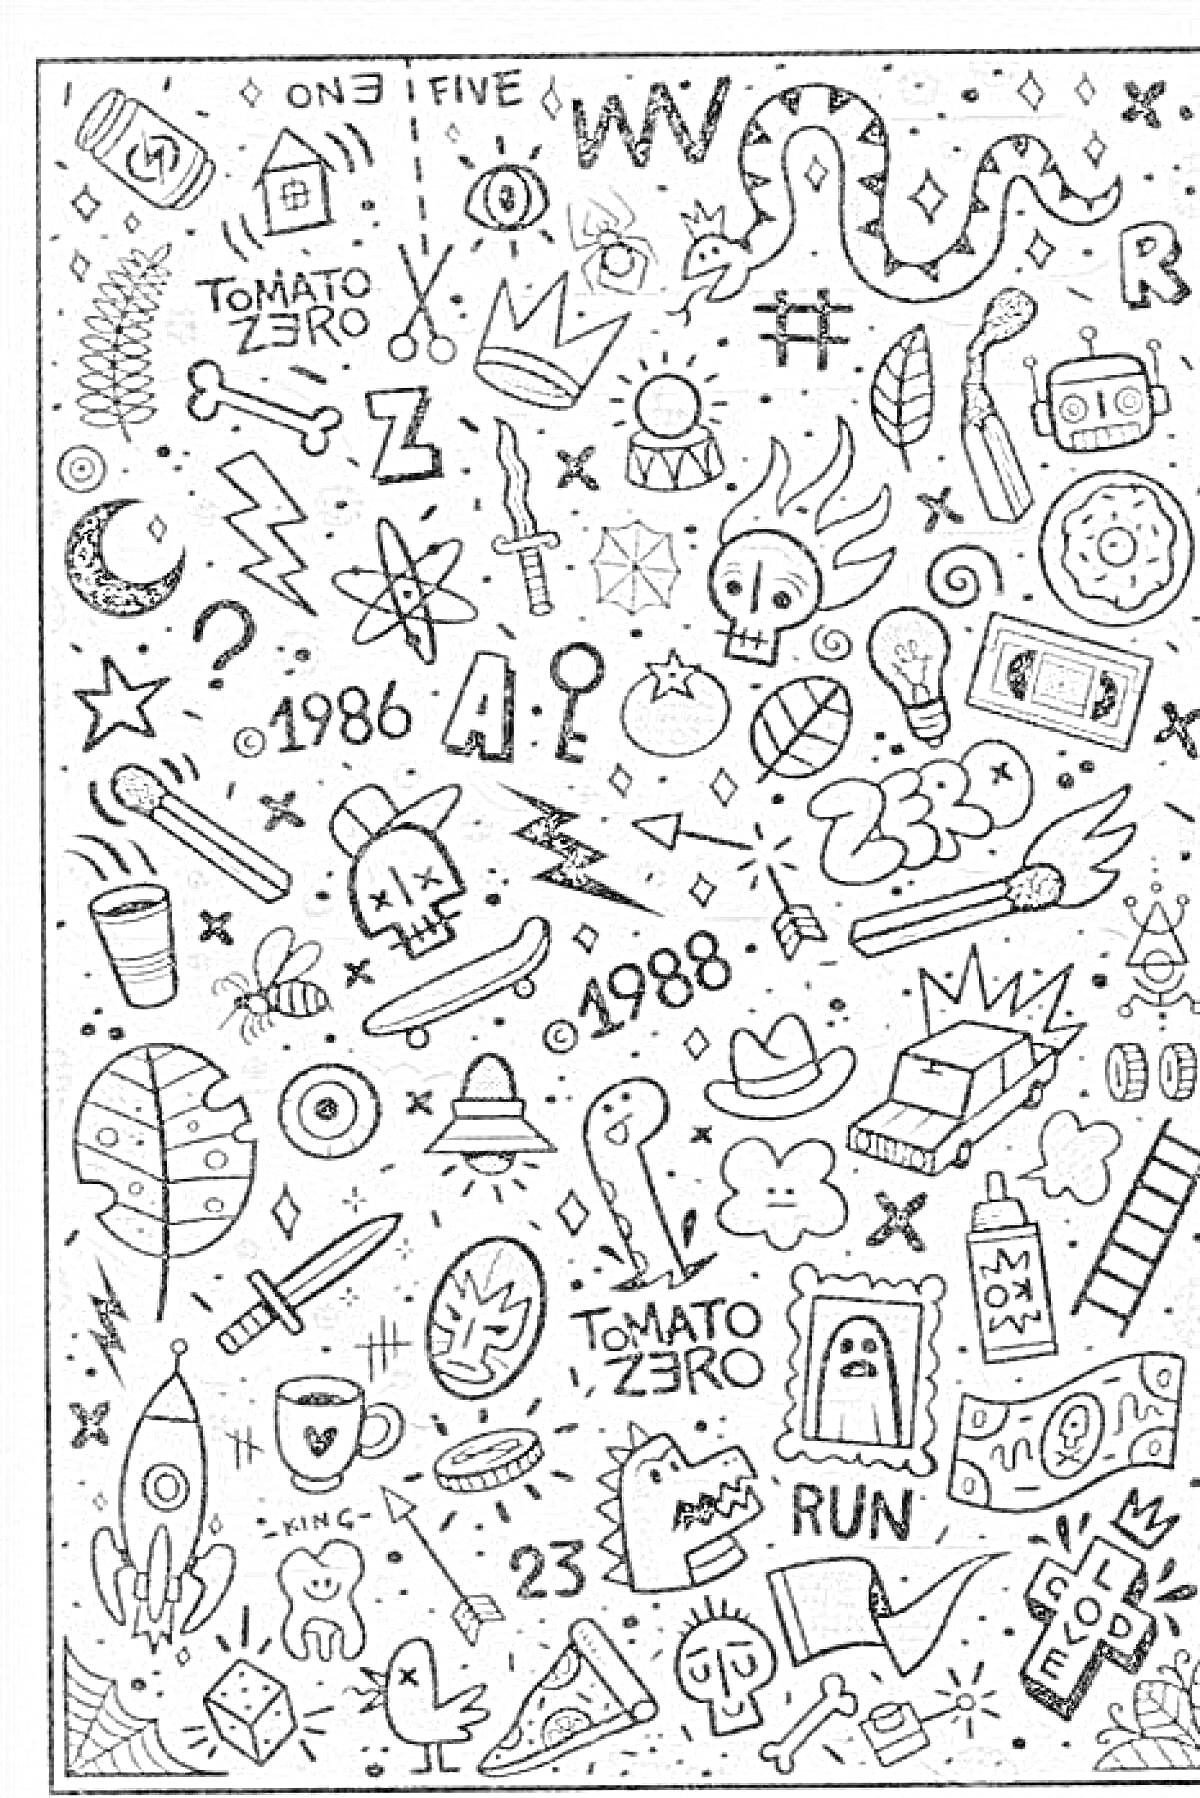 Раскраска Стикербук с разнообразными элементами: змея, робот, черепа, короны, летающие тарелки, ножи, ракета, молнии, чашка кофе, бегущий персонаж, ключ, буквы и цифры (1986, 1988), звезды, персик, сердце с крыльями, котелок, коронарный зубец, глаз, еда (пицца и на